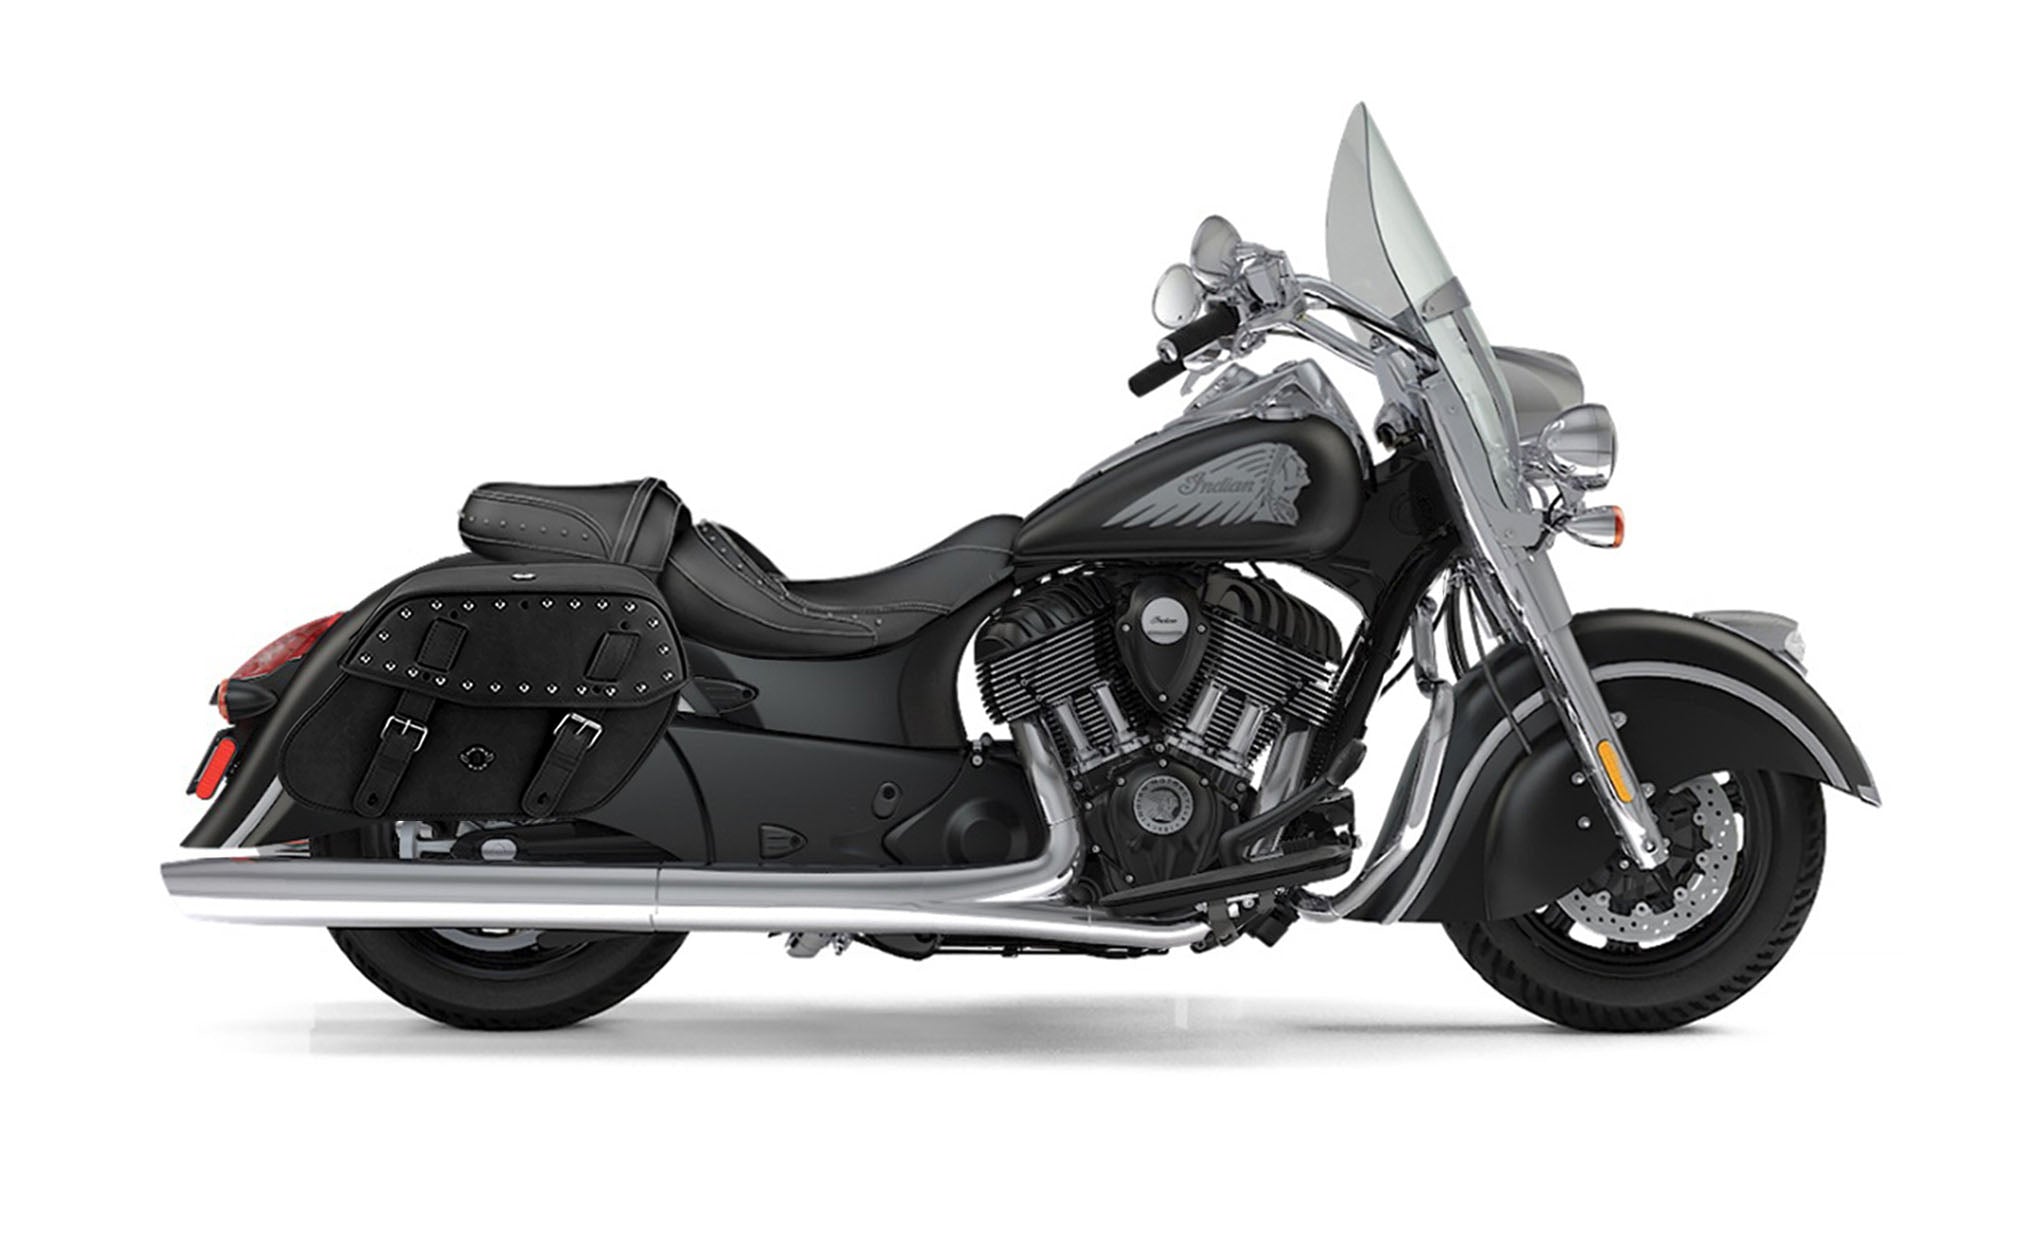 Viking Odin Large Indian Springfield Studded Leather Motorcycle Saddlebags on Bike Photo @expand